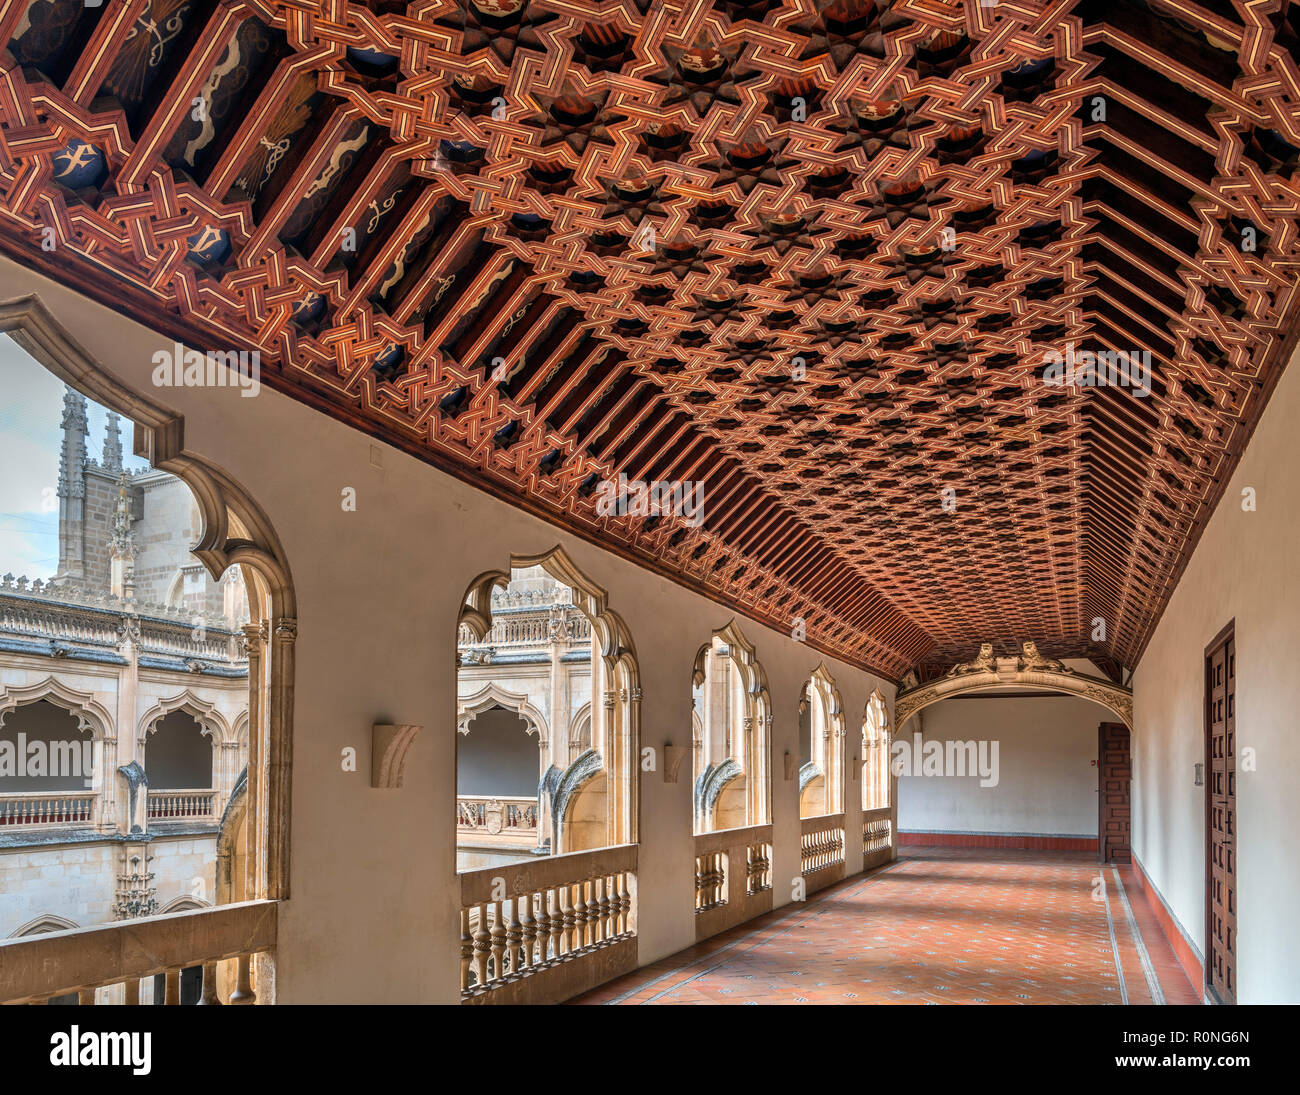 Soffitto in stile Mudejar nel Chiostro Superiore del Monastero di San Juan de los Reyes, Toledo, Castilla-La Mancha, in Spagna Foto Stock